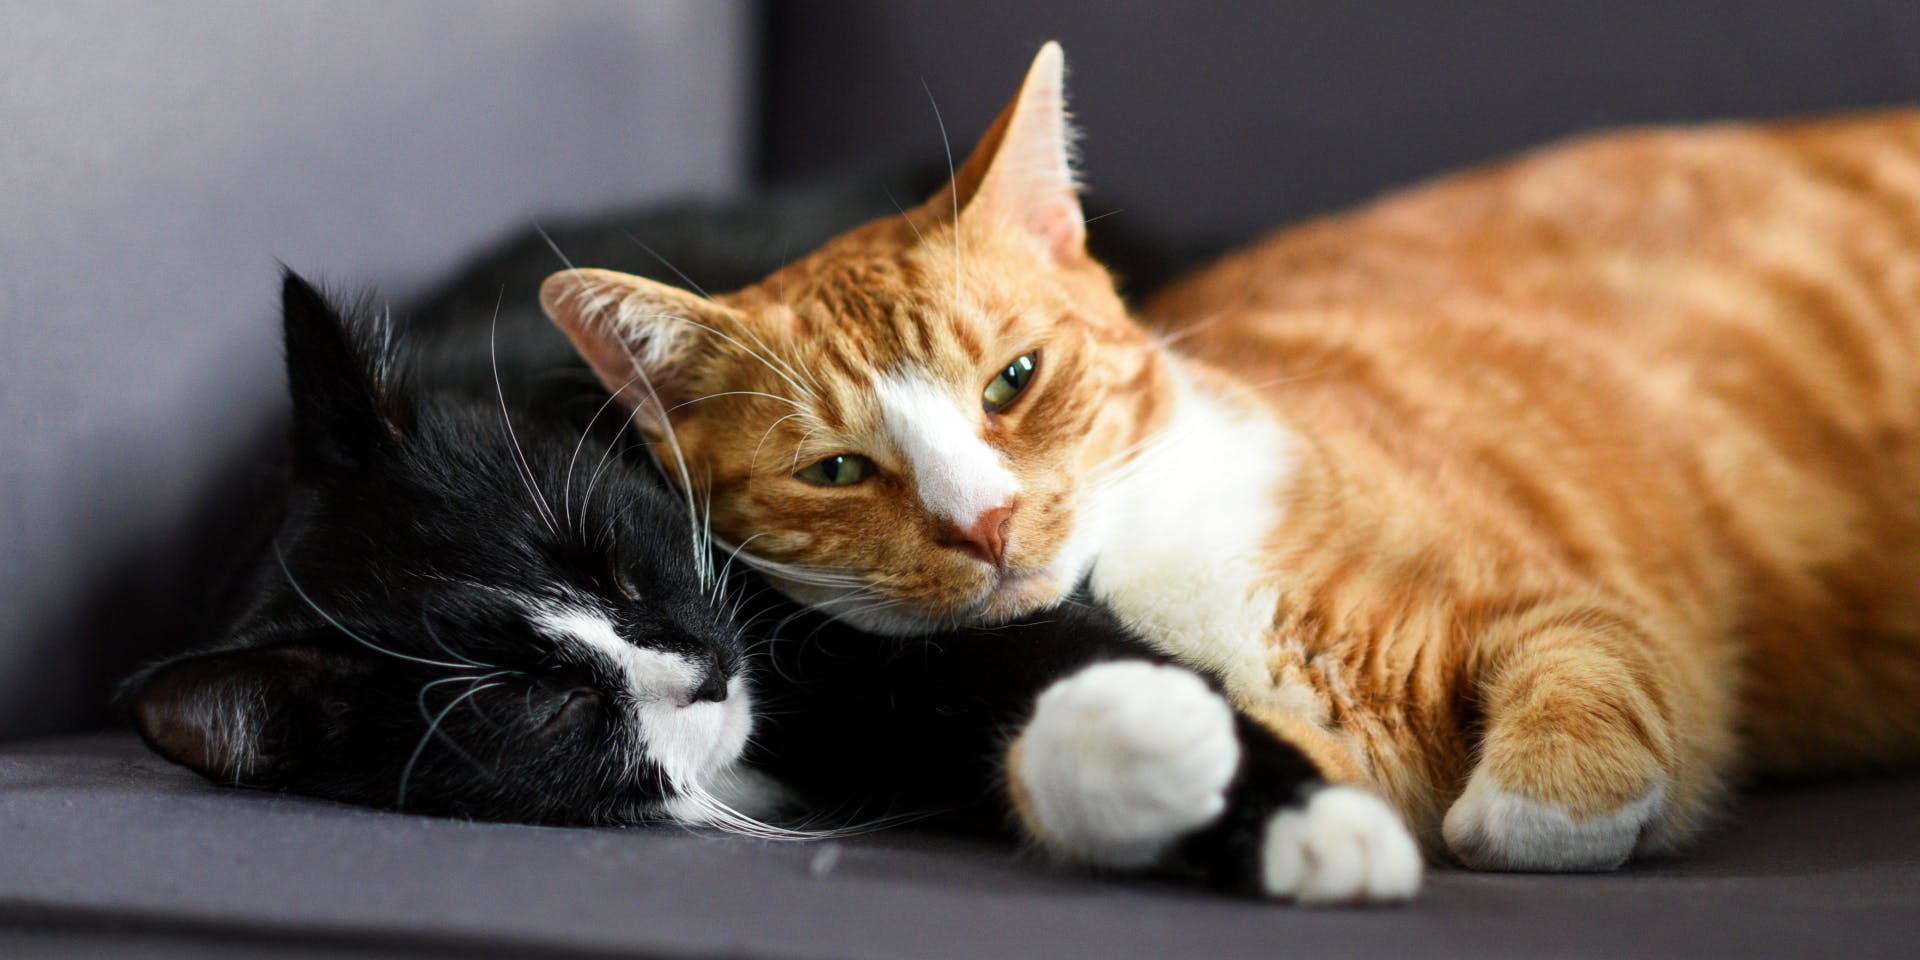 A black cat snuggled up next to an orange cat.